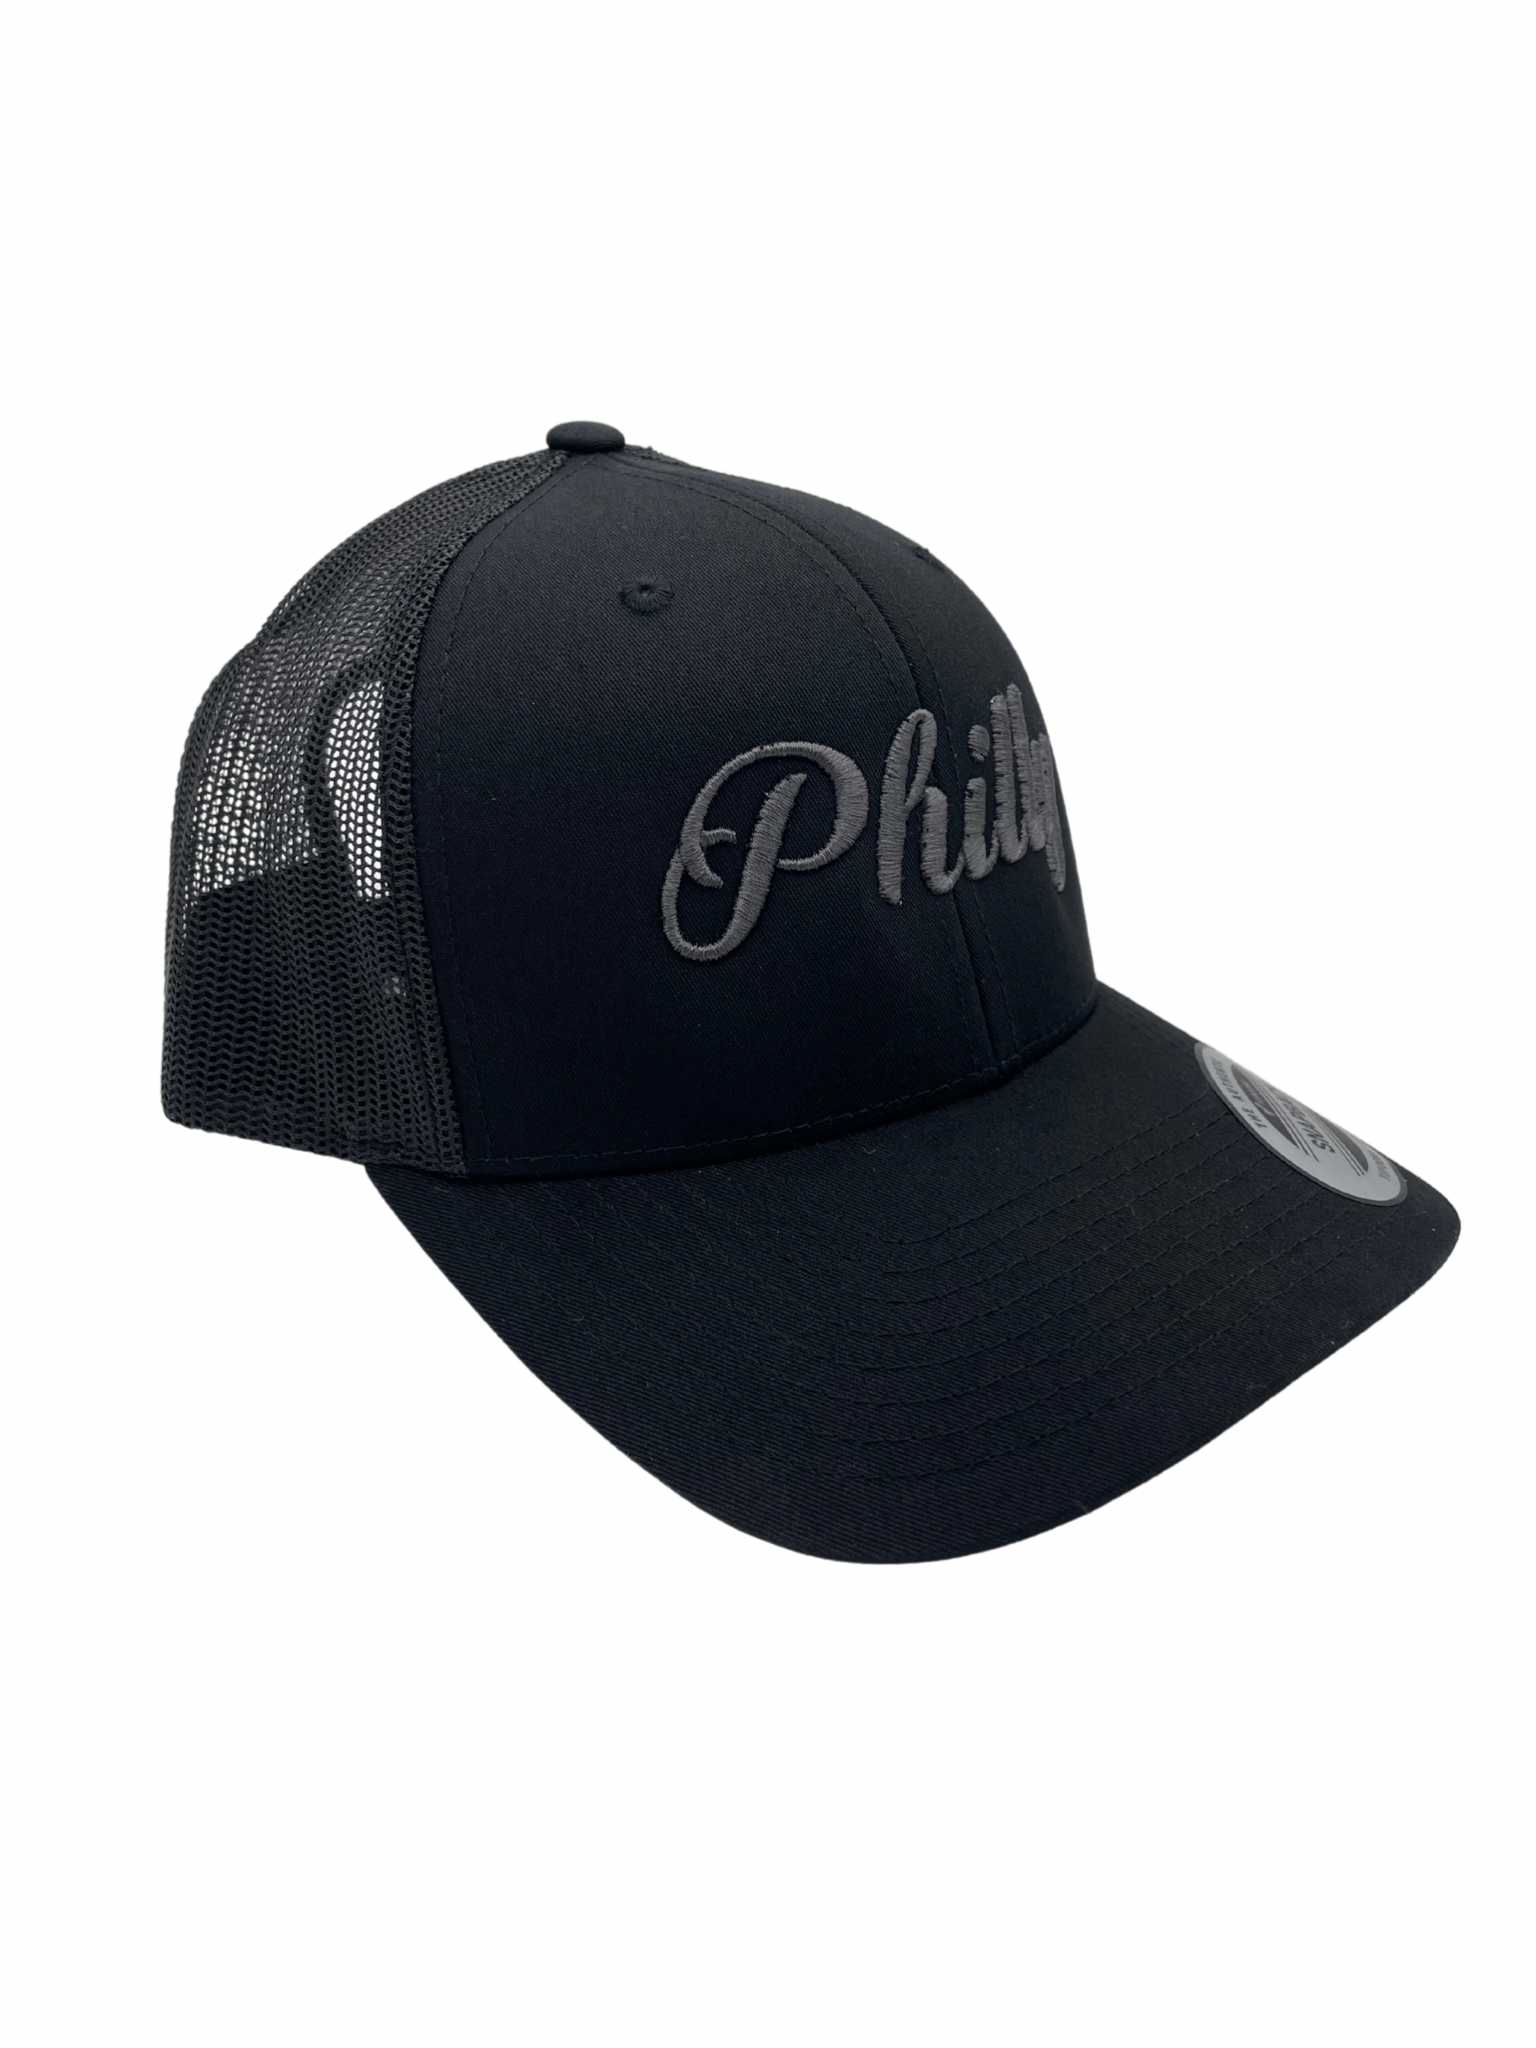 Philly Trucker Hat